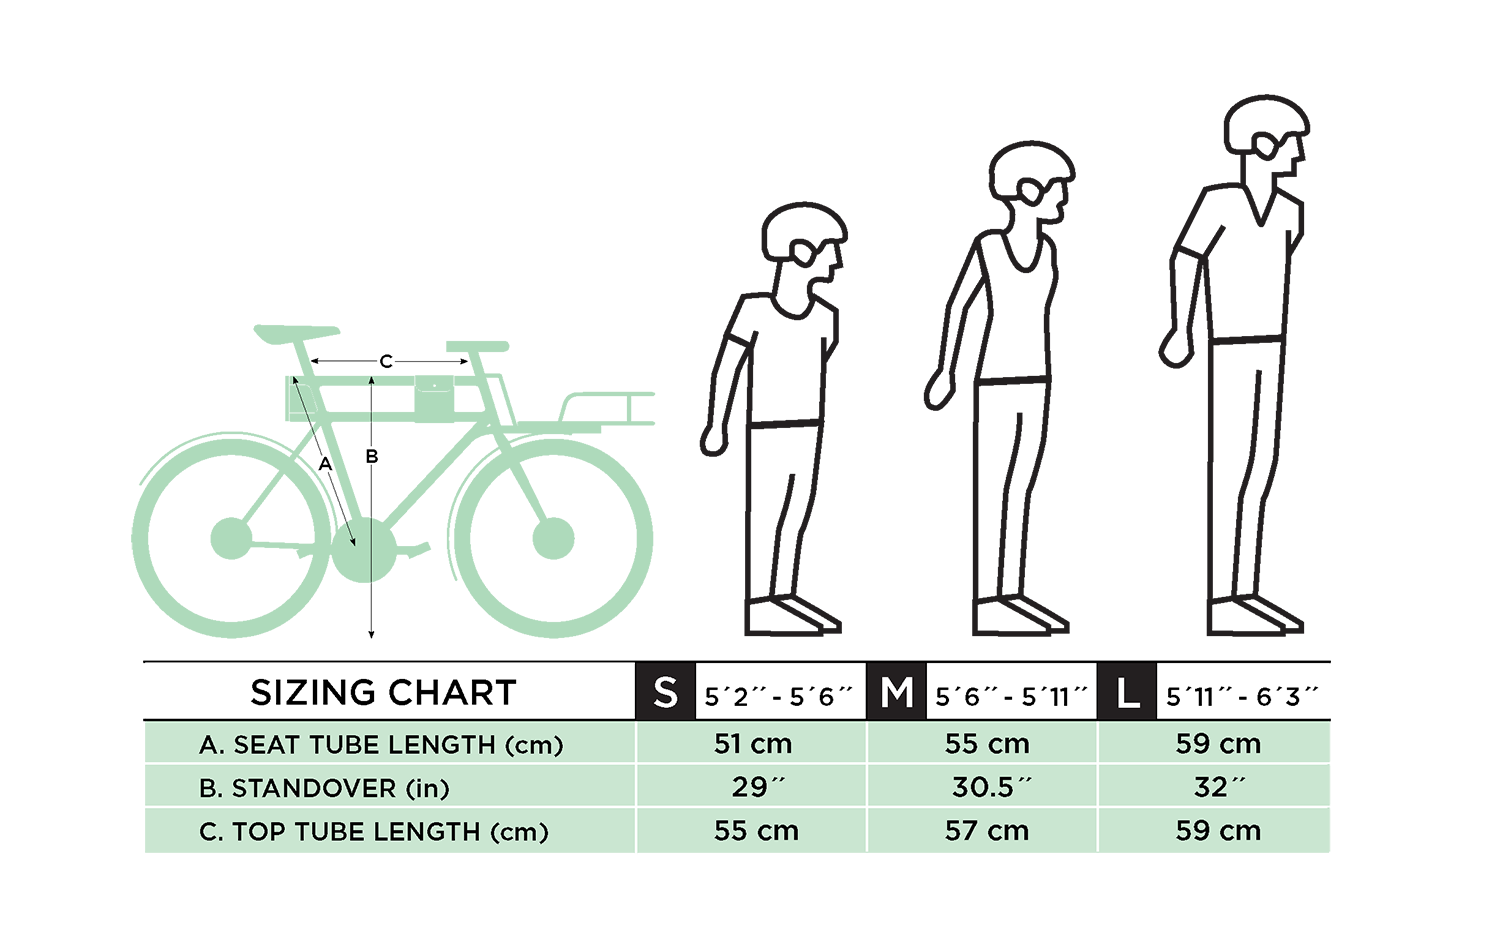 Как подобрать велосипед мужчине. Ростовка рамы велосипеда по росту таблица. Размер горного велосипеда по росту таблица для женщин. Размер рамы велосипеда по росту таблица для детей. Рамы велосипедов по росту таблица.